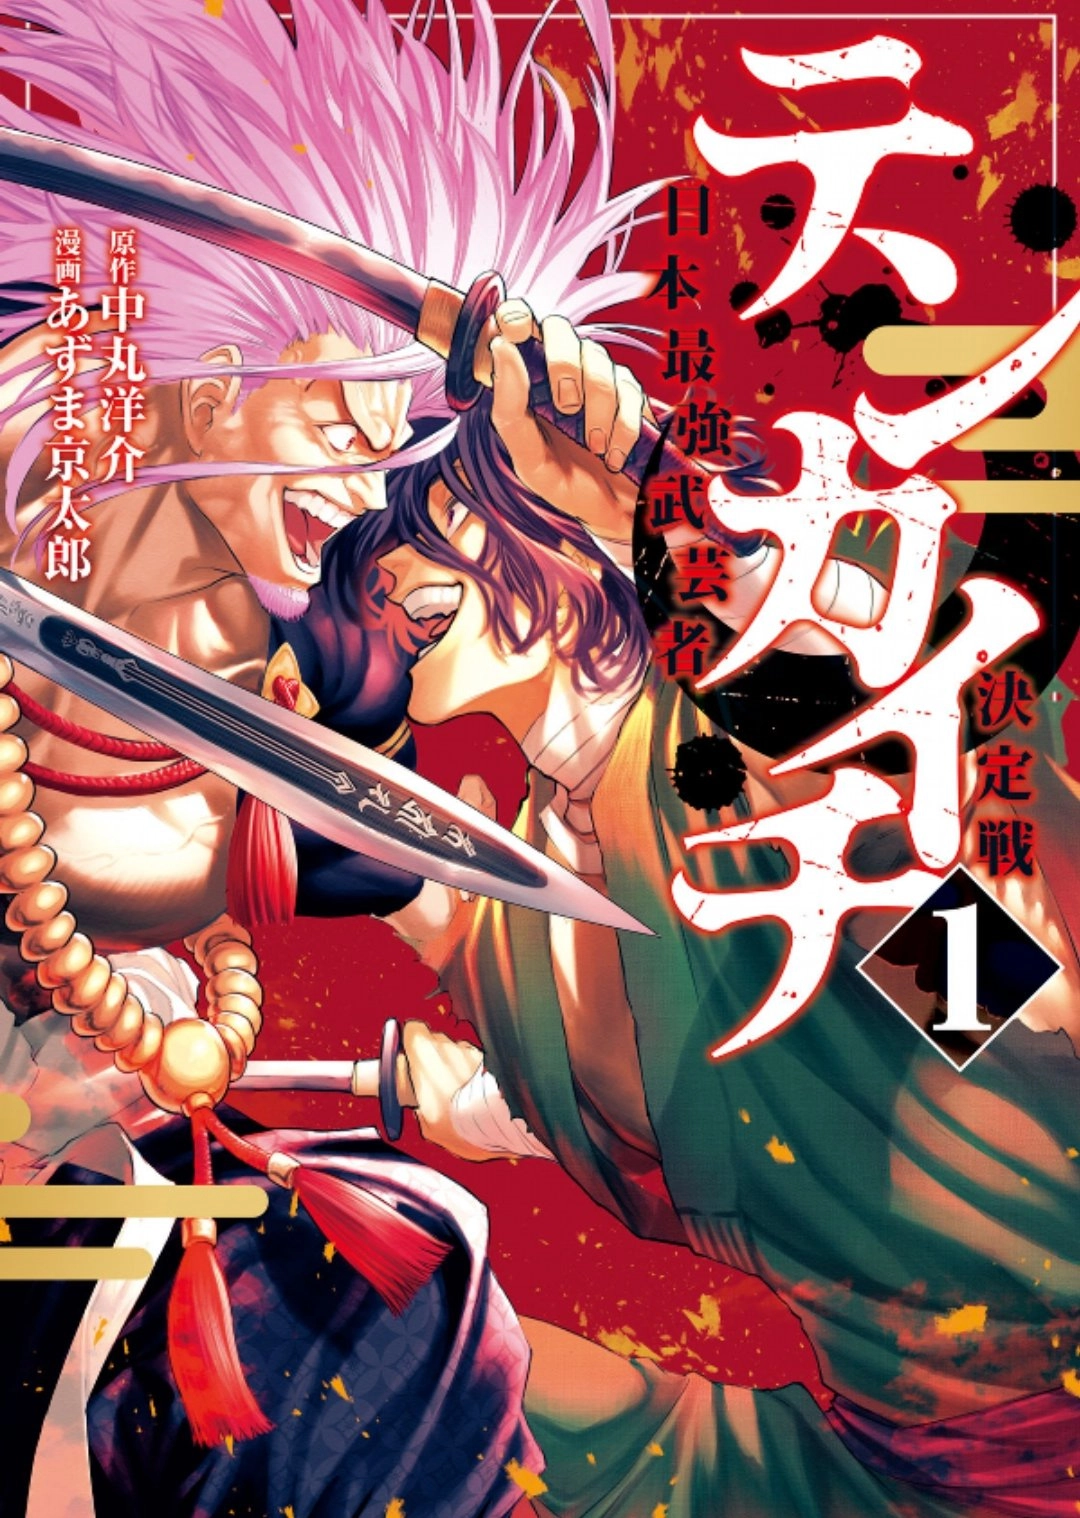 Portada del manga Tenkaichi, ilustrado por Azuma Kyoutaro, quien trabajará con ONE en Versus